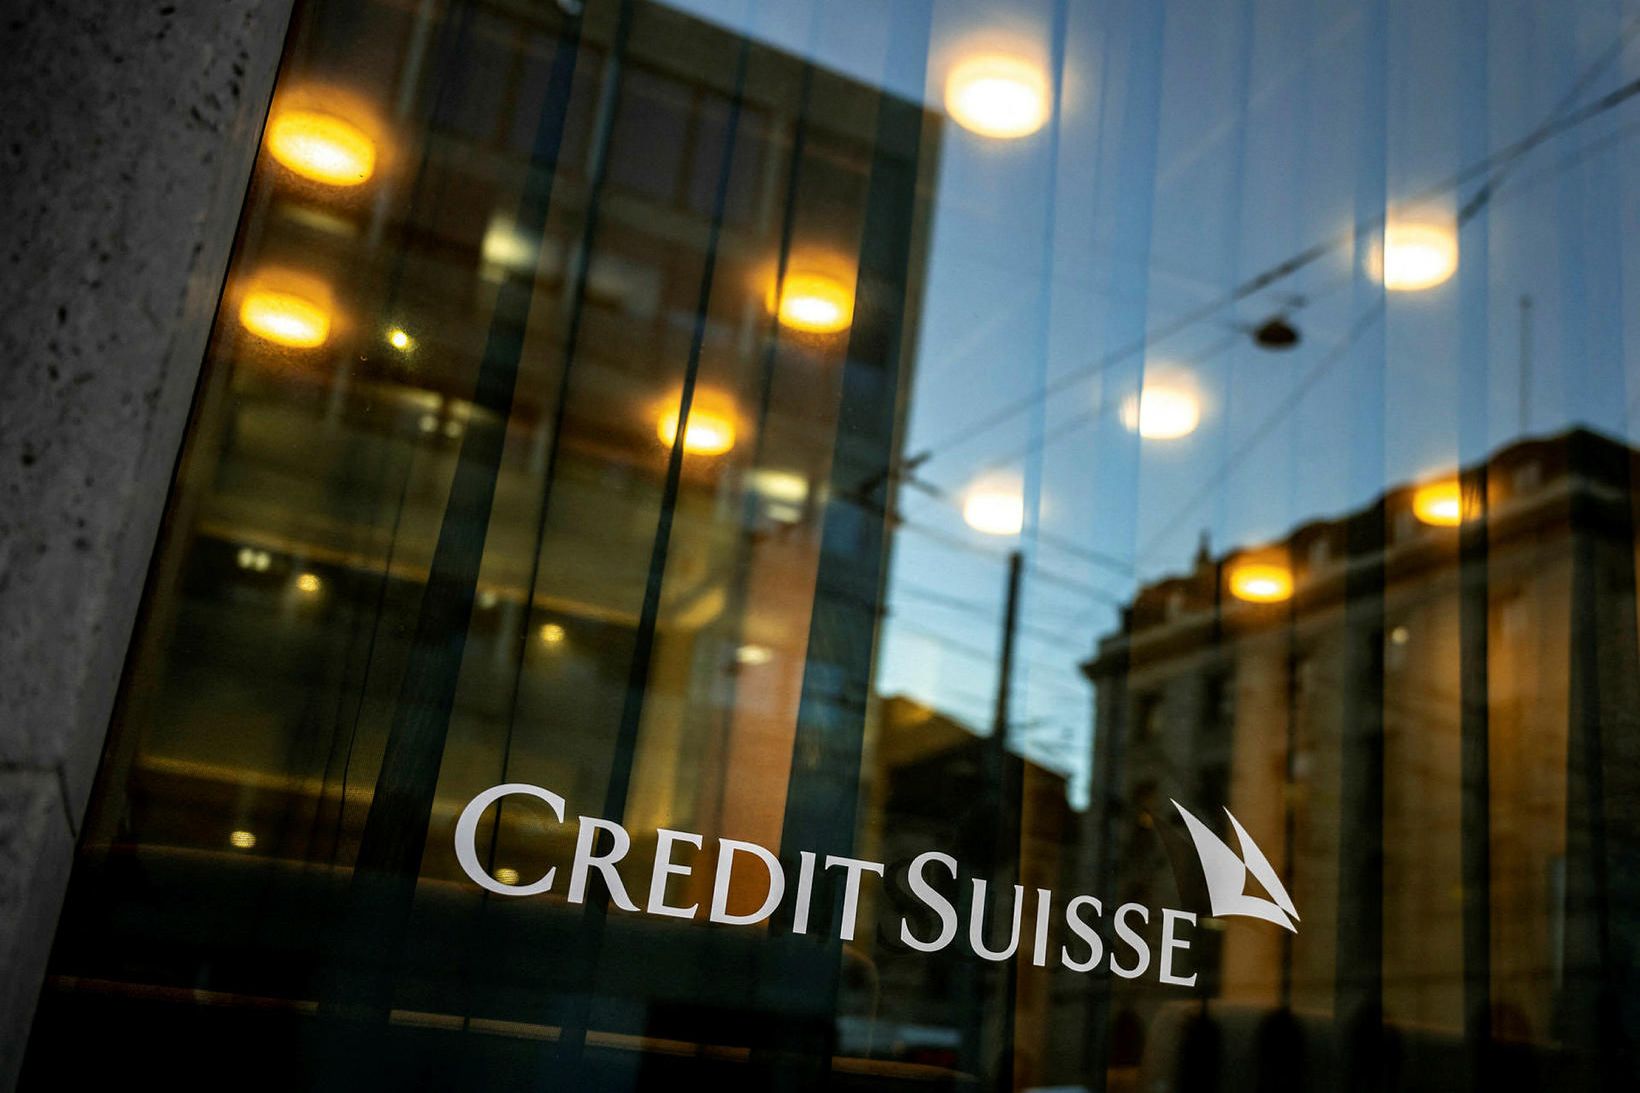 Bankinn Credit Suisse í borginni Genf.